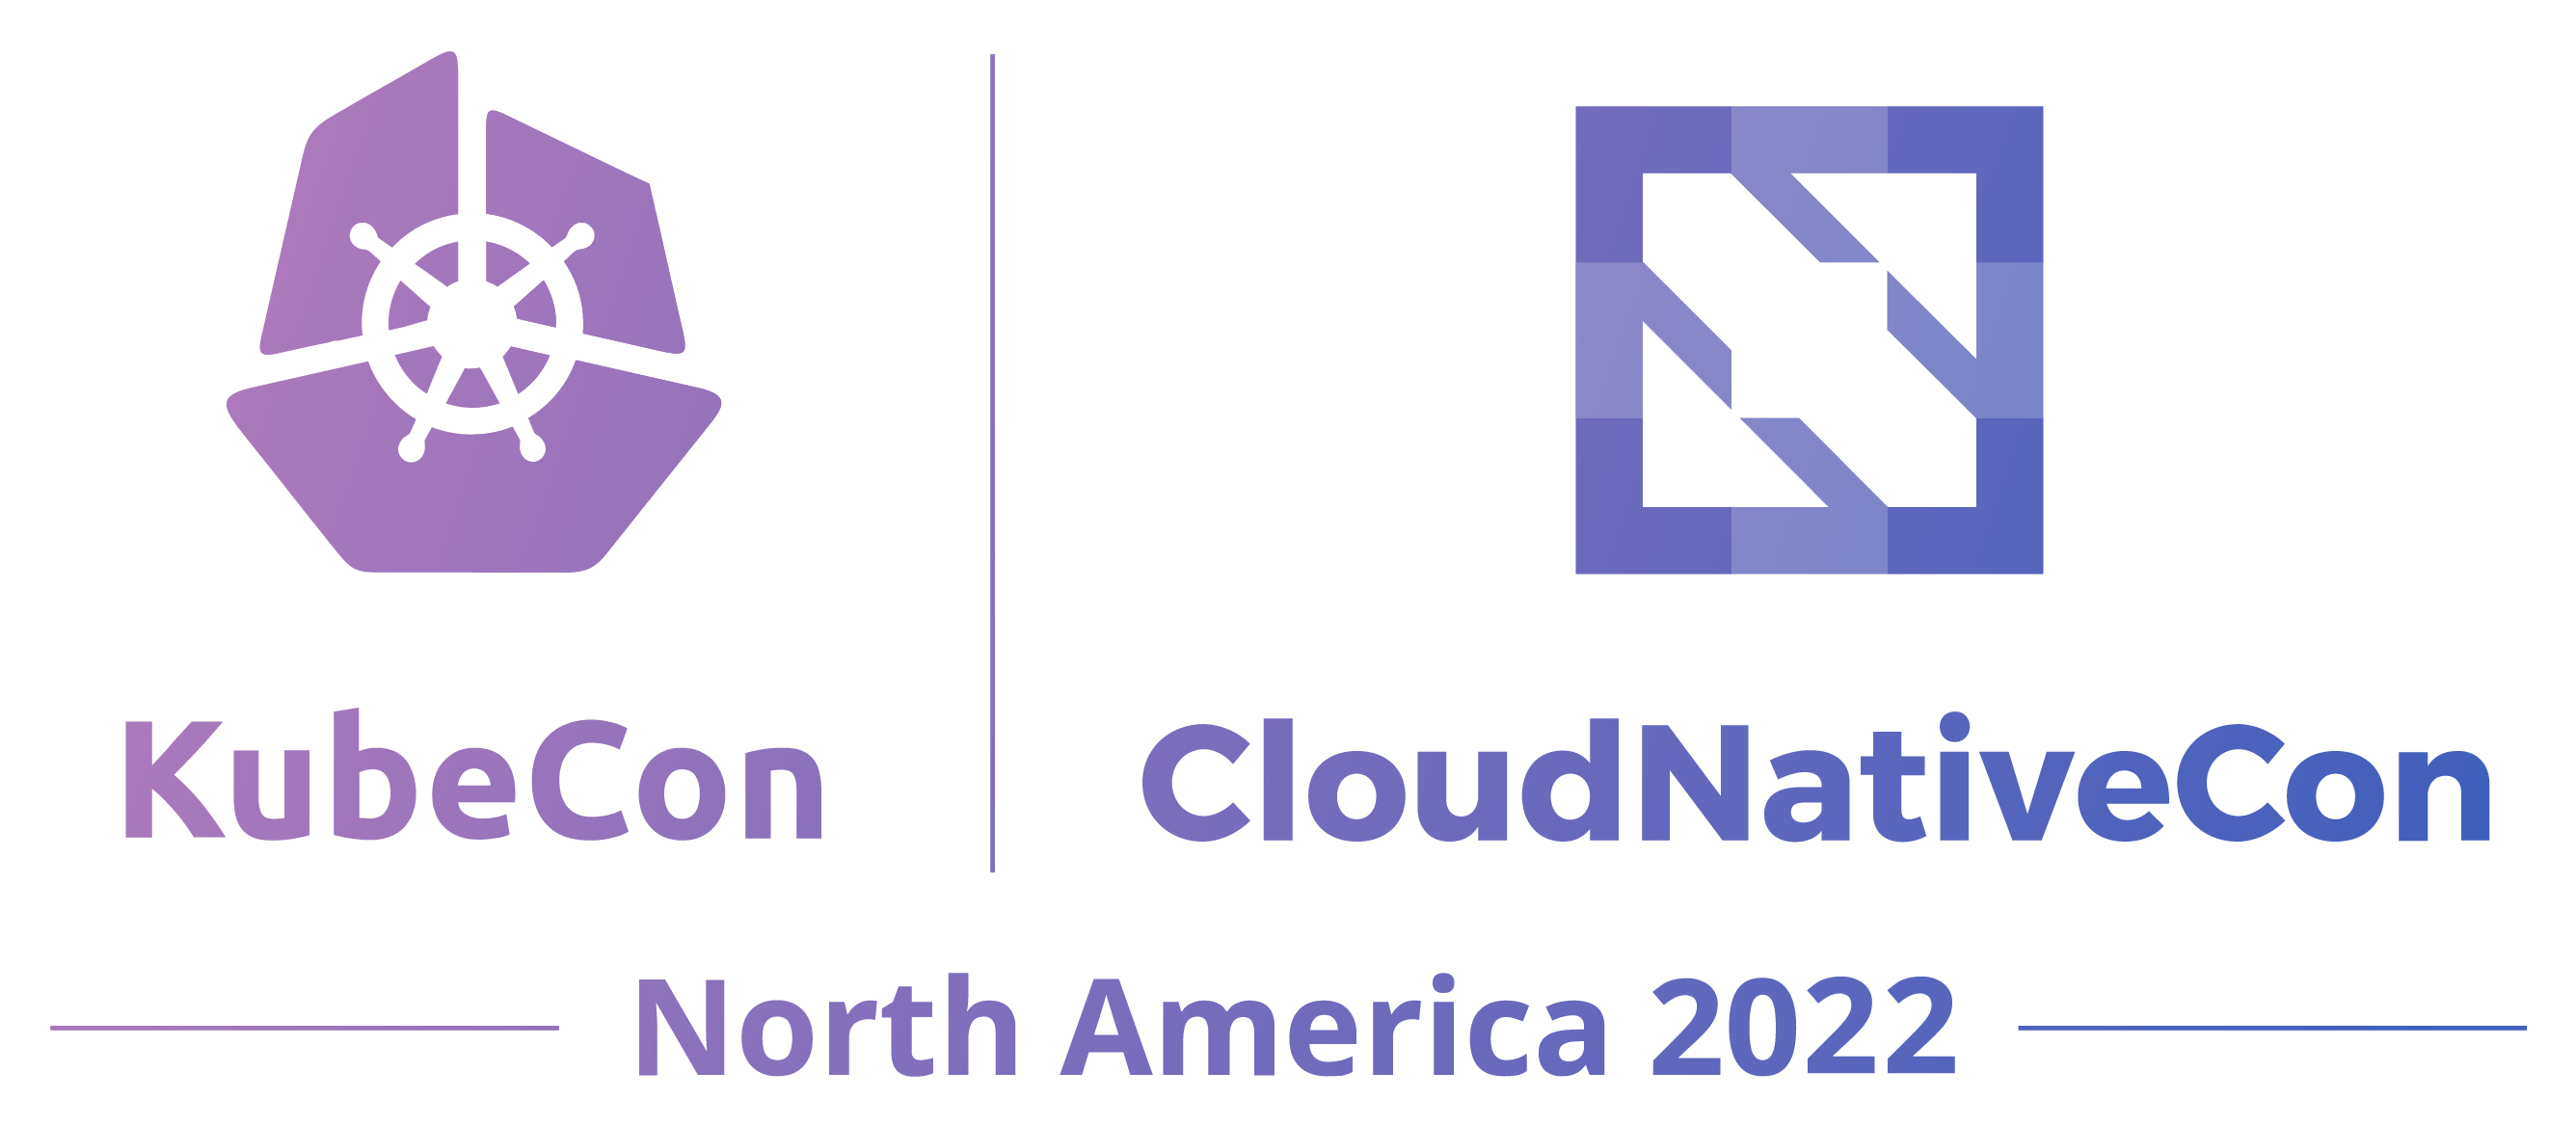 Kubecon CloudNative Con logo